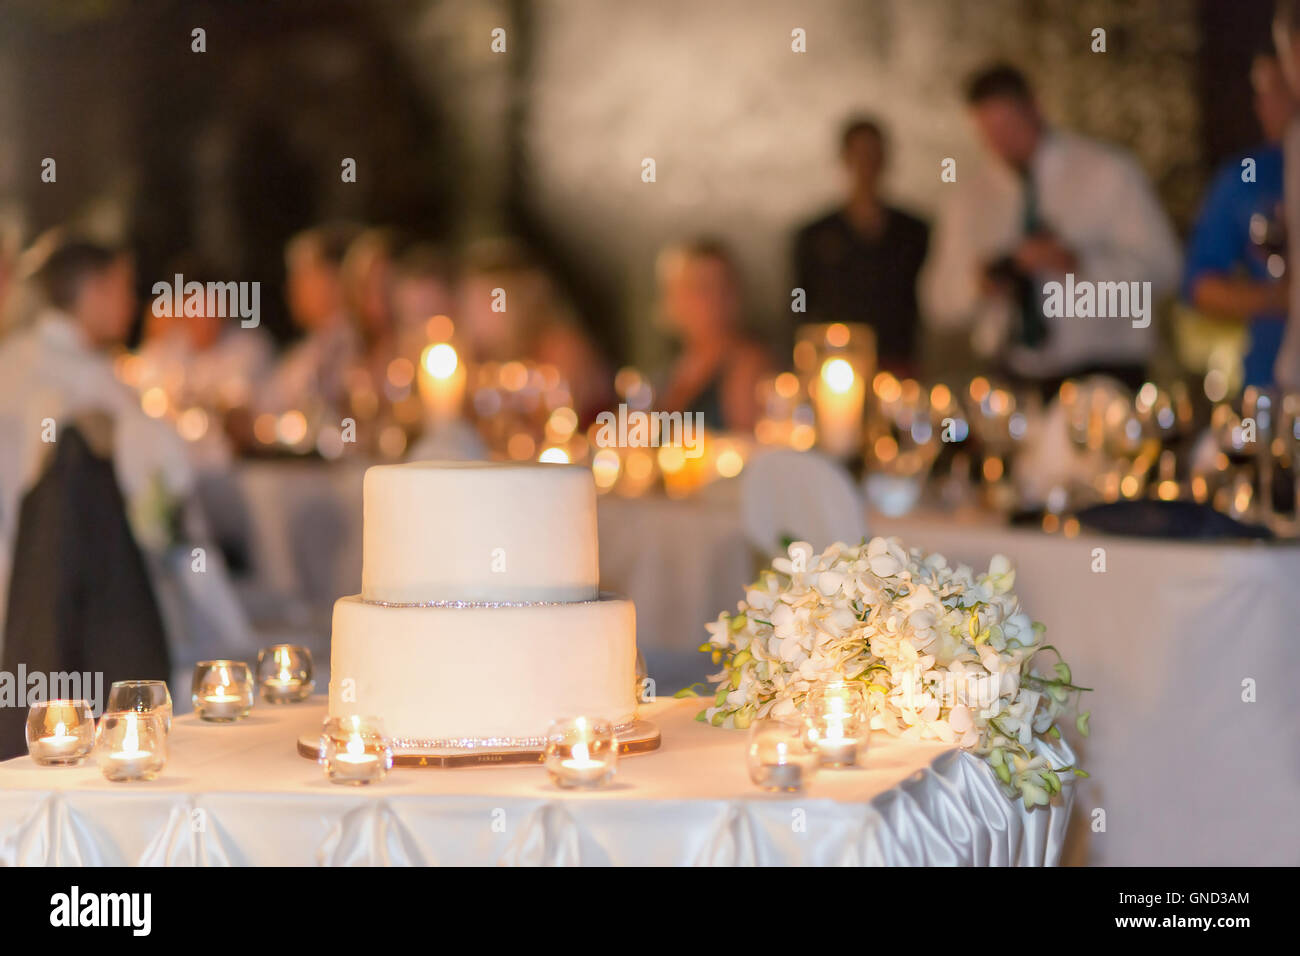 Le gâteau de mariage blanc, décorée avec le sol d'argent, partie arrière-plan. Focus sélectif. Banque D'Images